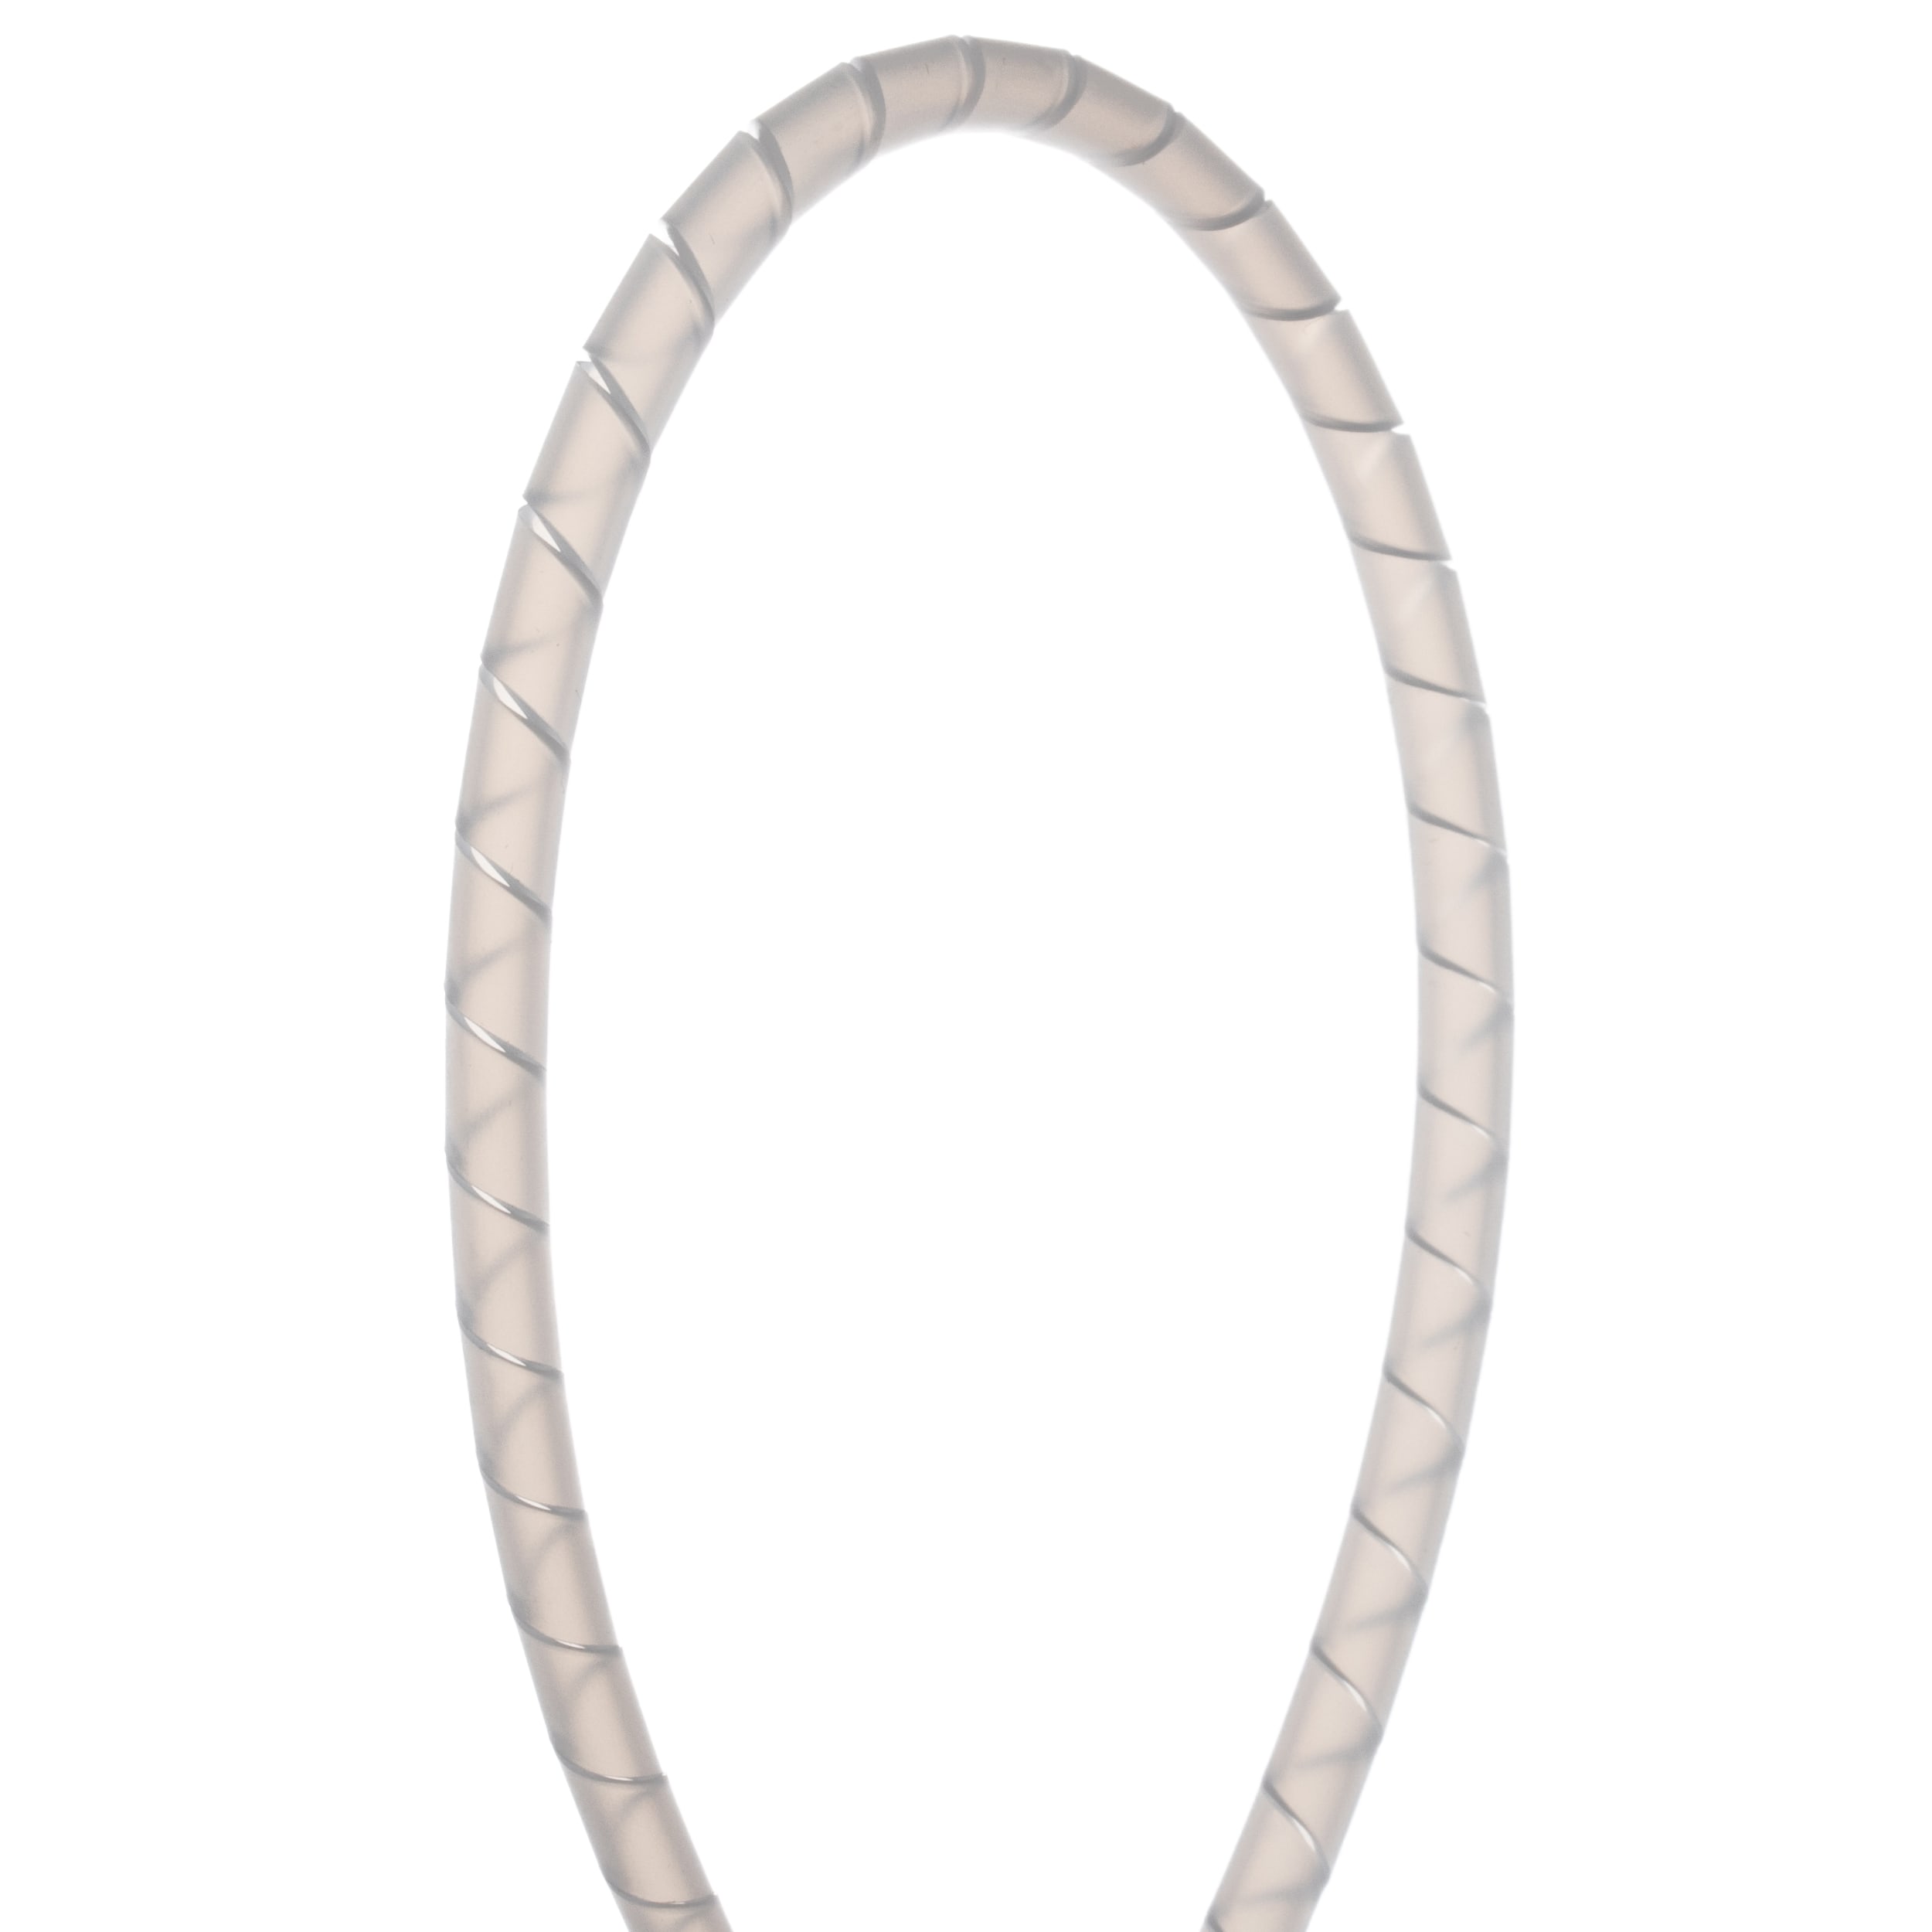 Panduit - Rouleau gaine spiralée;diamètre ext. 6,4mm;TFE Nat.;longueur 15,2m;Cdt.1